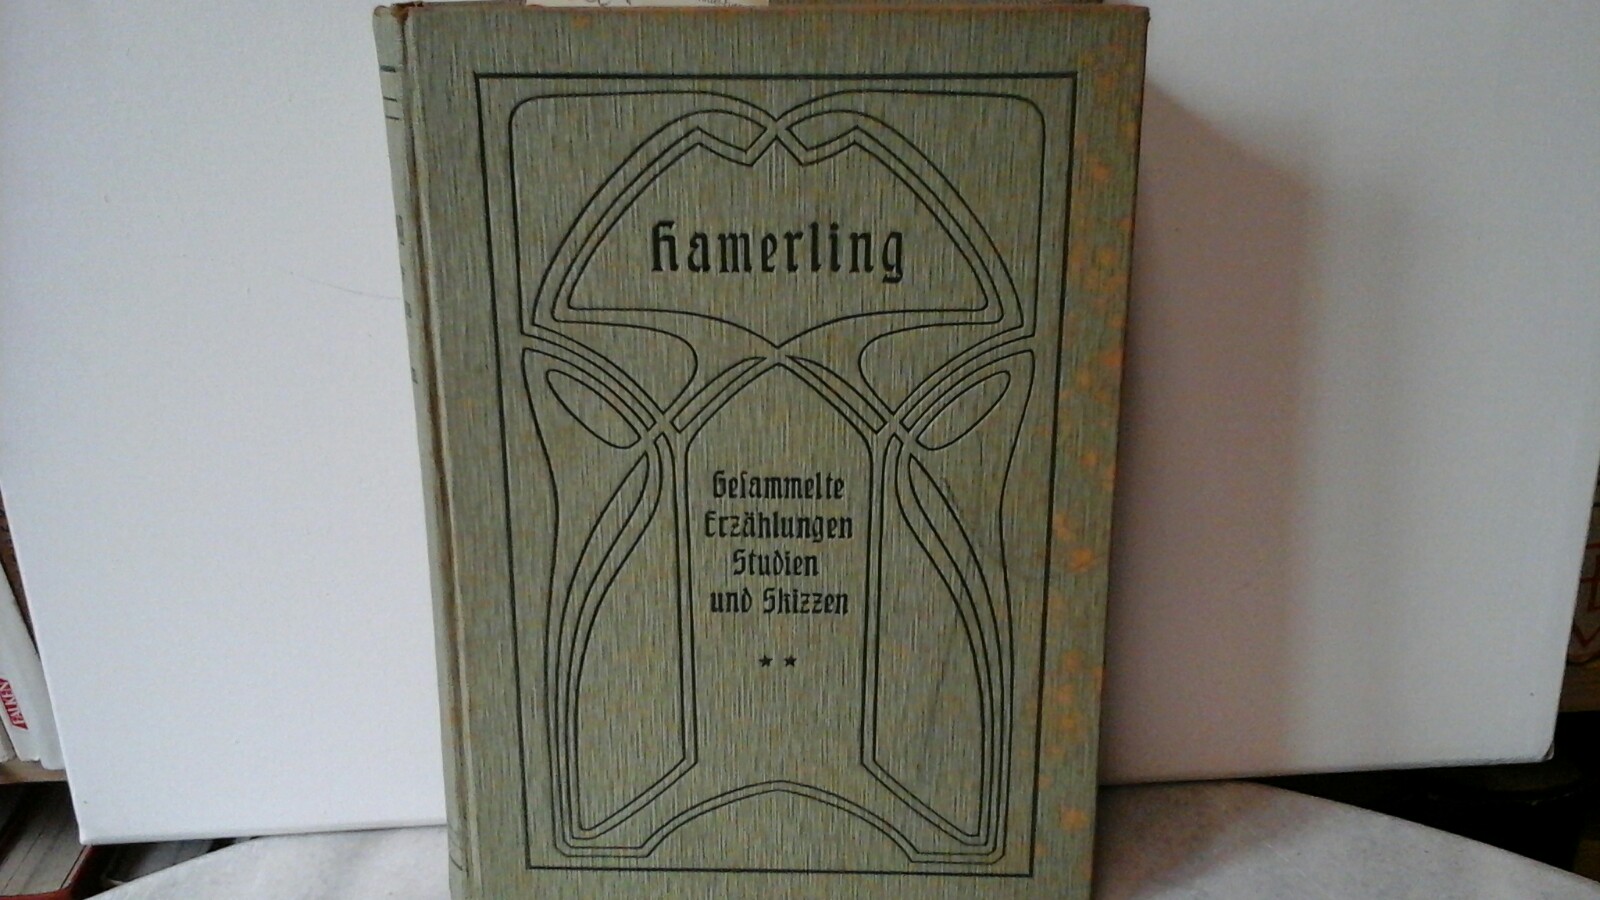 HAMERLING, ROBERT: Gesammelte Erzhlungen. Studien und Skizzen. (NUR der 2. Band, von 2 in) Zwei Theile(n) in einem Band. (Der 1.Band hat 452 Seiten) Erste /1./ Auflage.